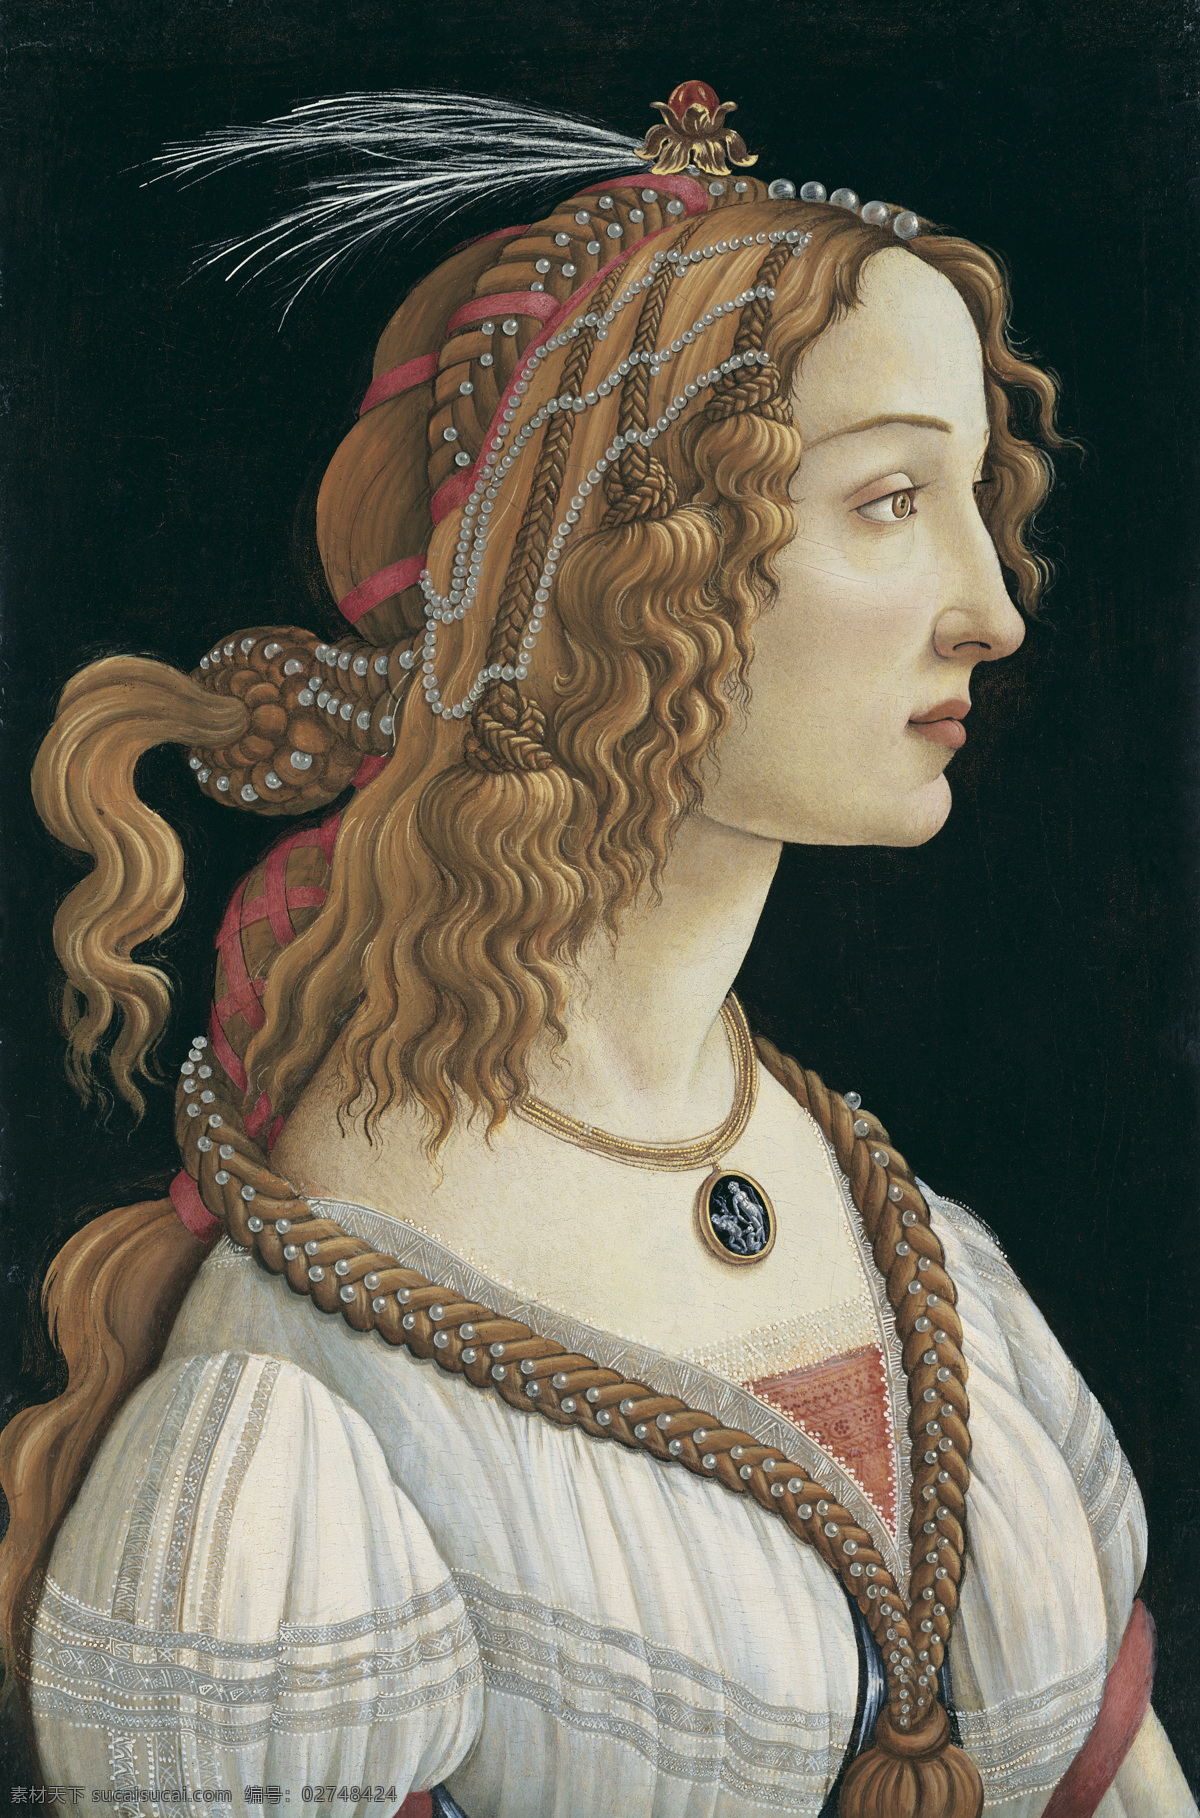 西蒙奈塔夫人 桑德罗 波 提 切利 油画 世界名画 高清世界名画 绘画书法 文化艺术